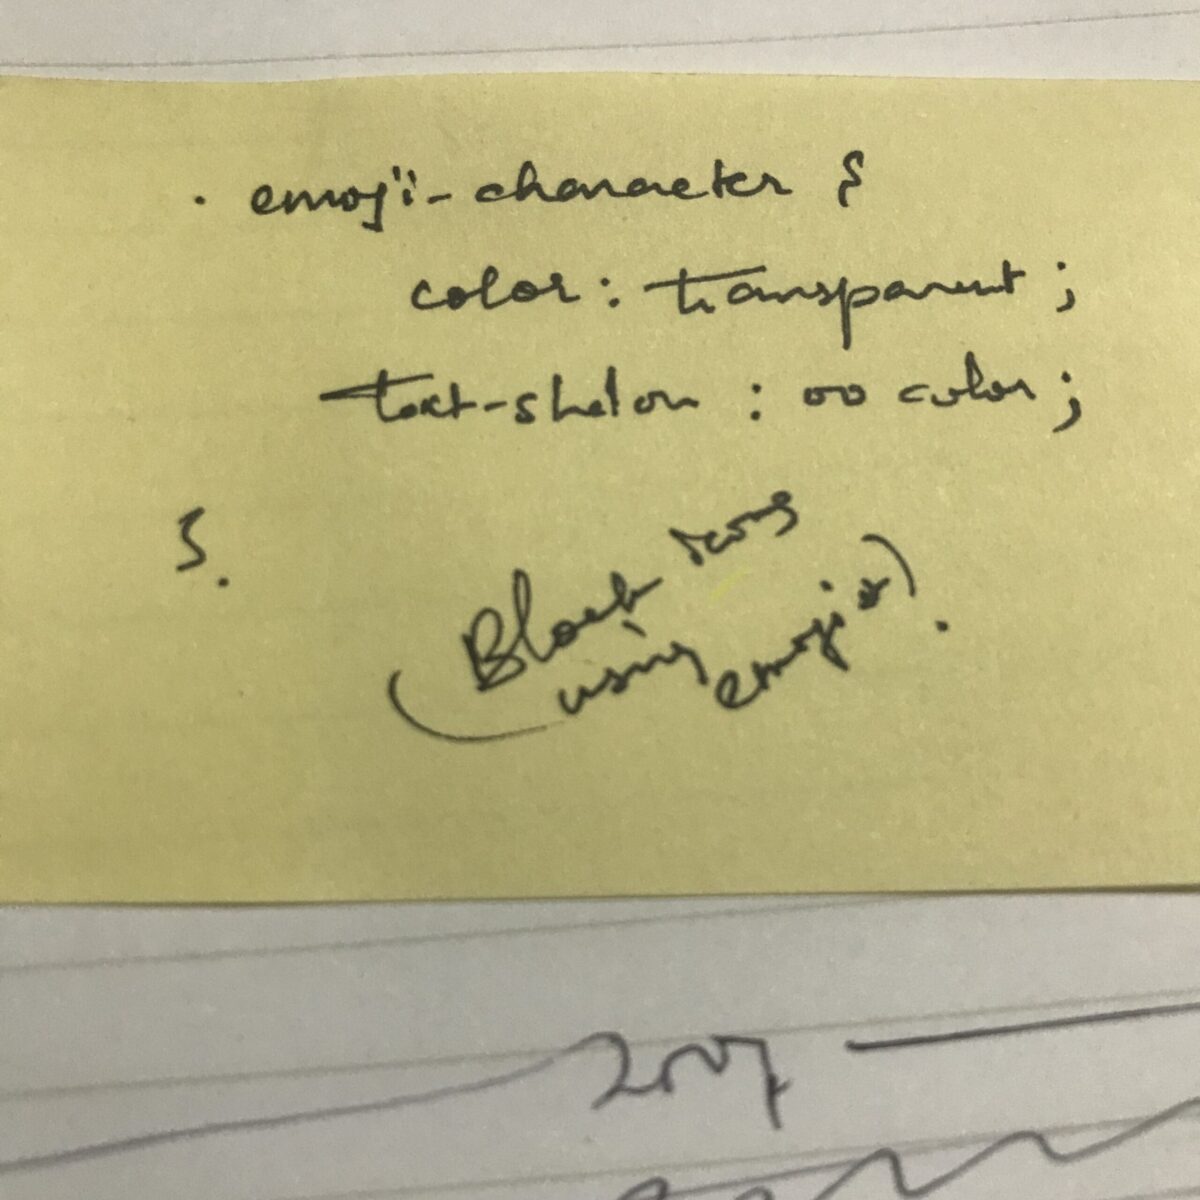 کاغذ بدون خط زرد با کد دست نویس با خط شکسته با جوهر سیاه.